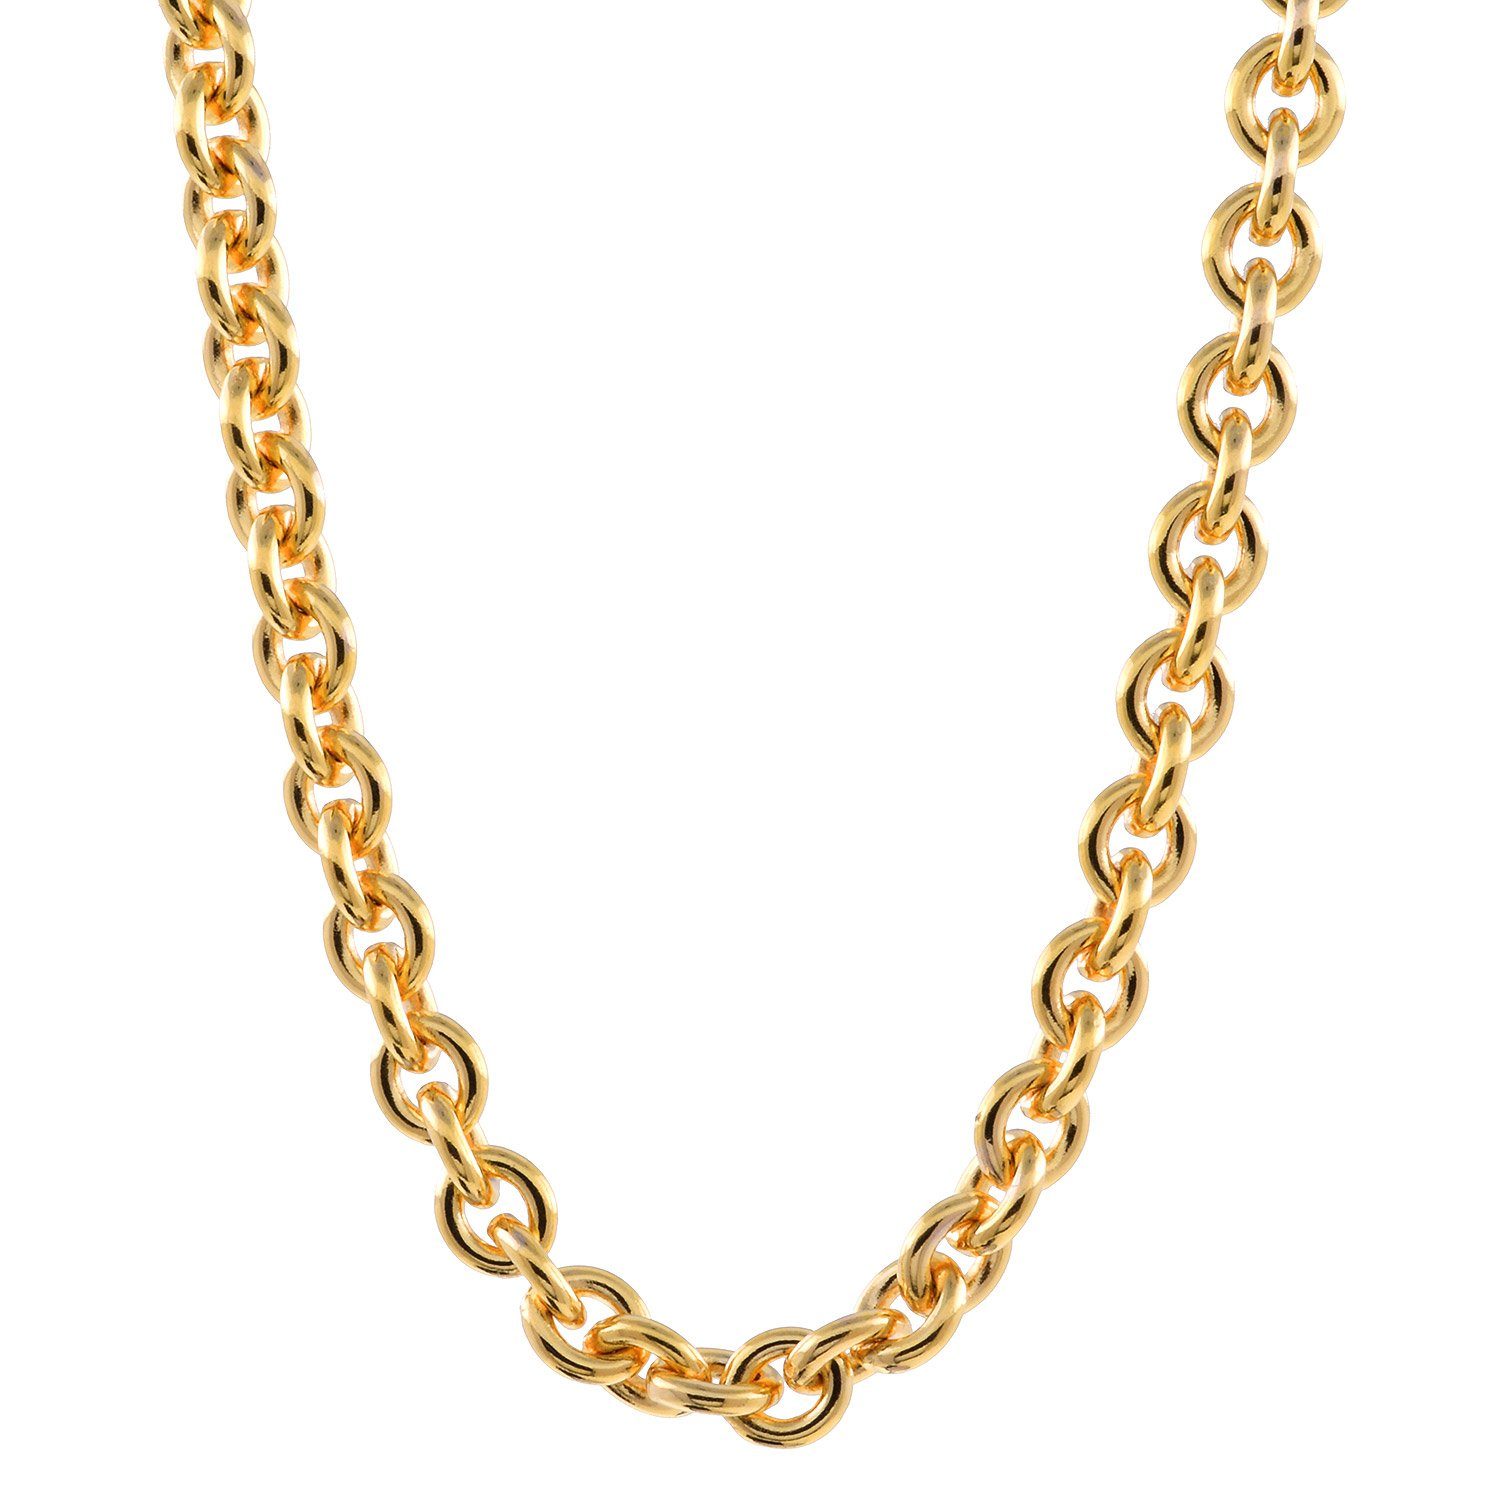 Herren Schmuck HOPLO Goldkette 2,8 mm 42 cm 750 - 18 Karat Gold Halskette Ankerkette rund massiv Gold hochwertige Goldkette 10,8